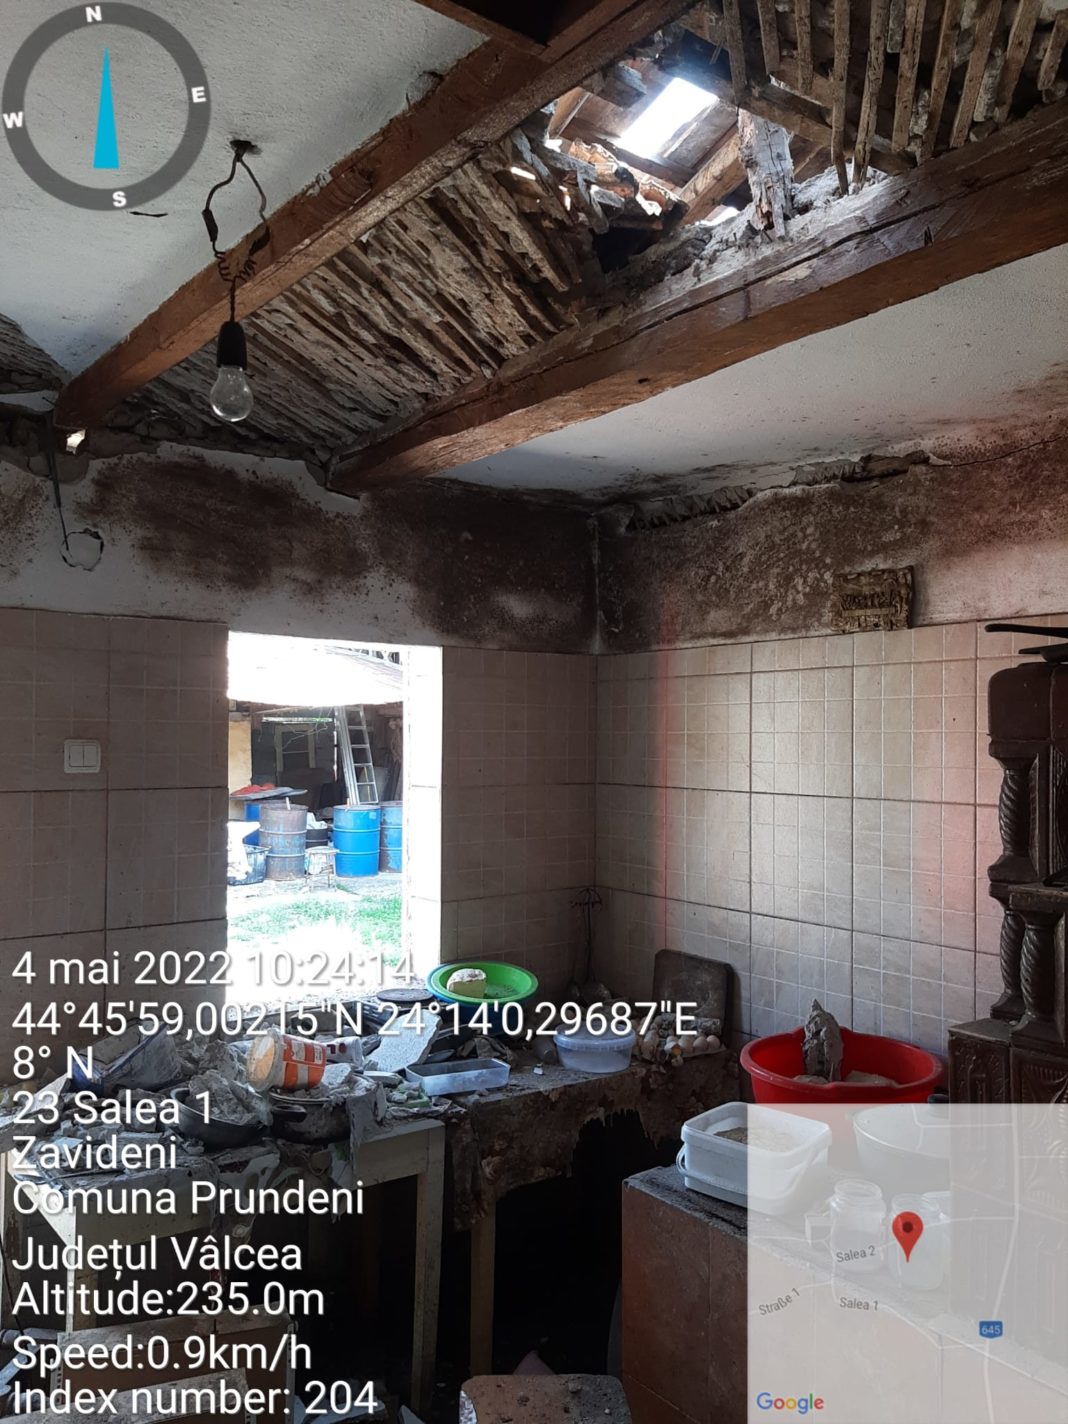 În urma deflagrației, interiorul locuinței în care s-a produs a fost avariat, acoperișul locuinței a fost de asemenea deteriorat